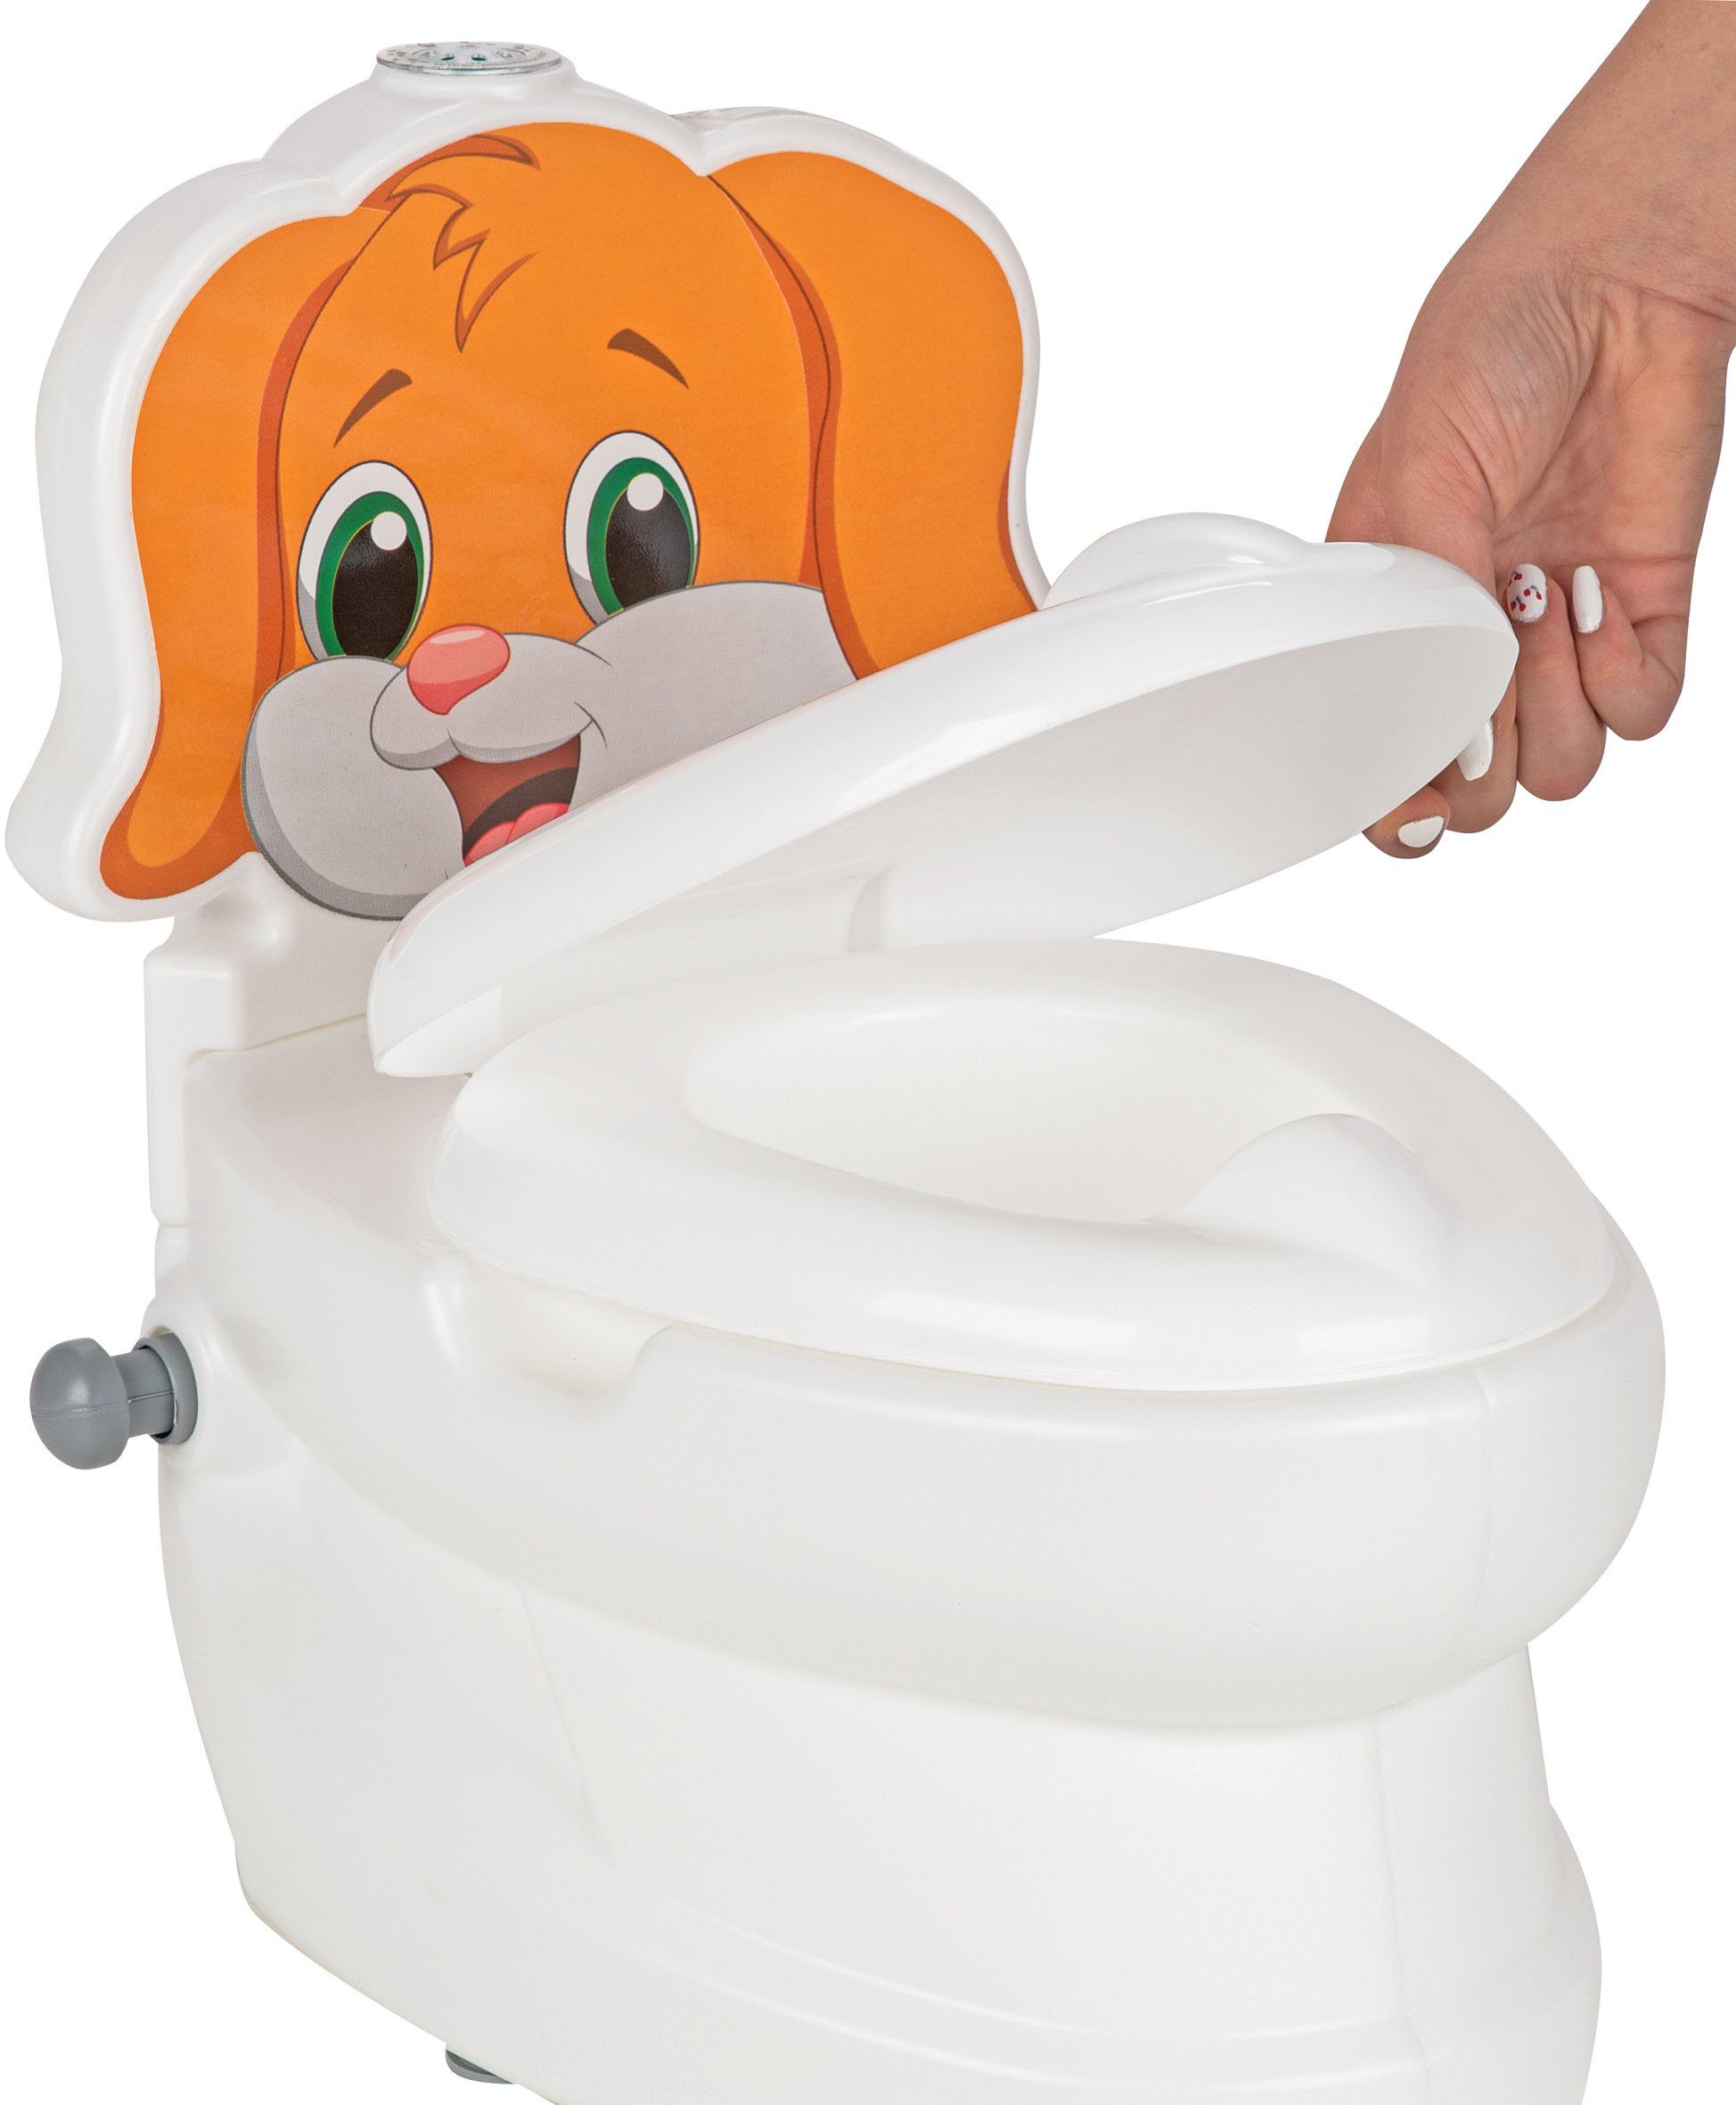 Jamara Toilettentrainer Meine kleine Toilette, Toilettenpapierhalter Hund, Spülsound und mit